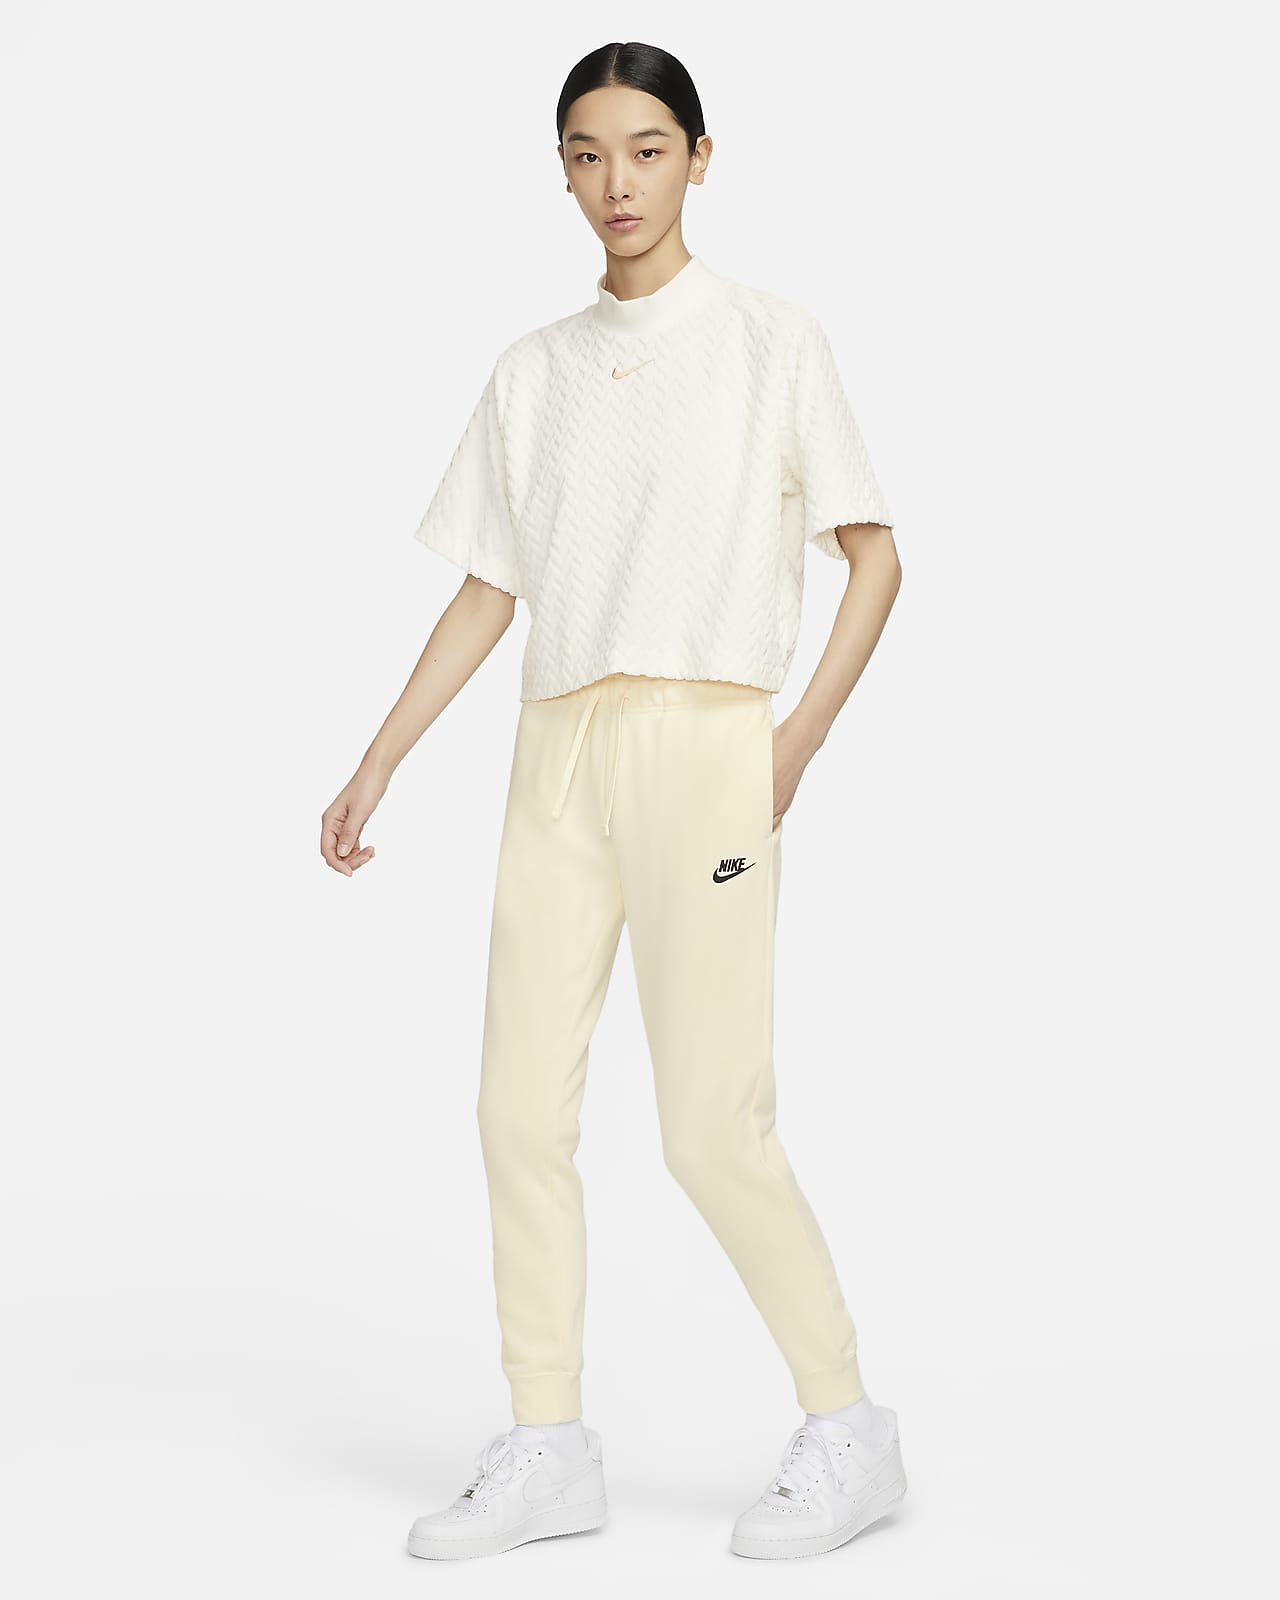 Nike Sportswear Club Fleece Women’s Sweatpants - White”